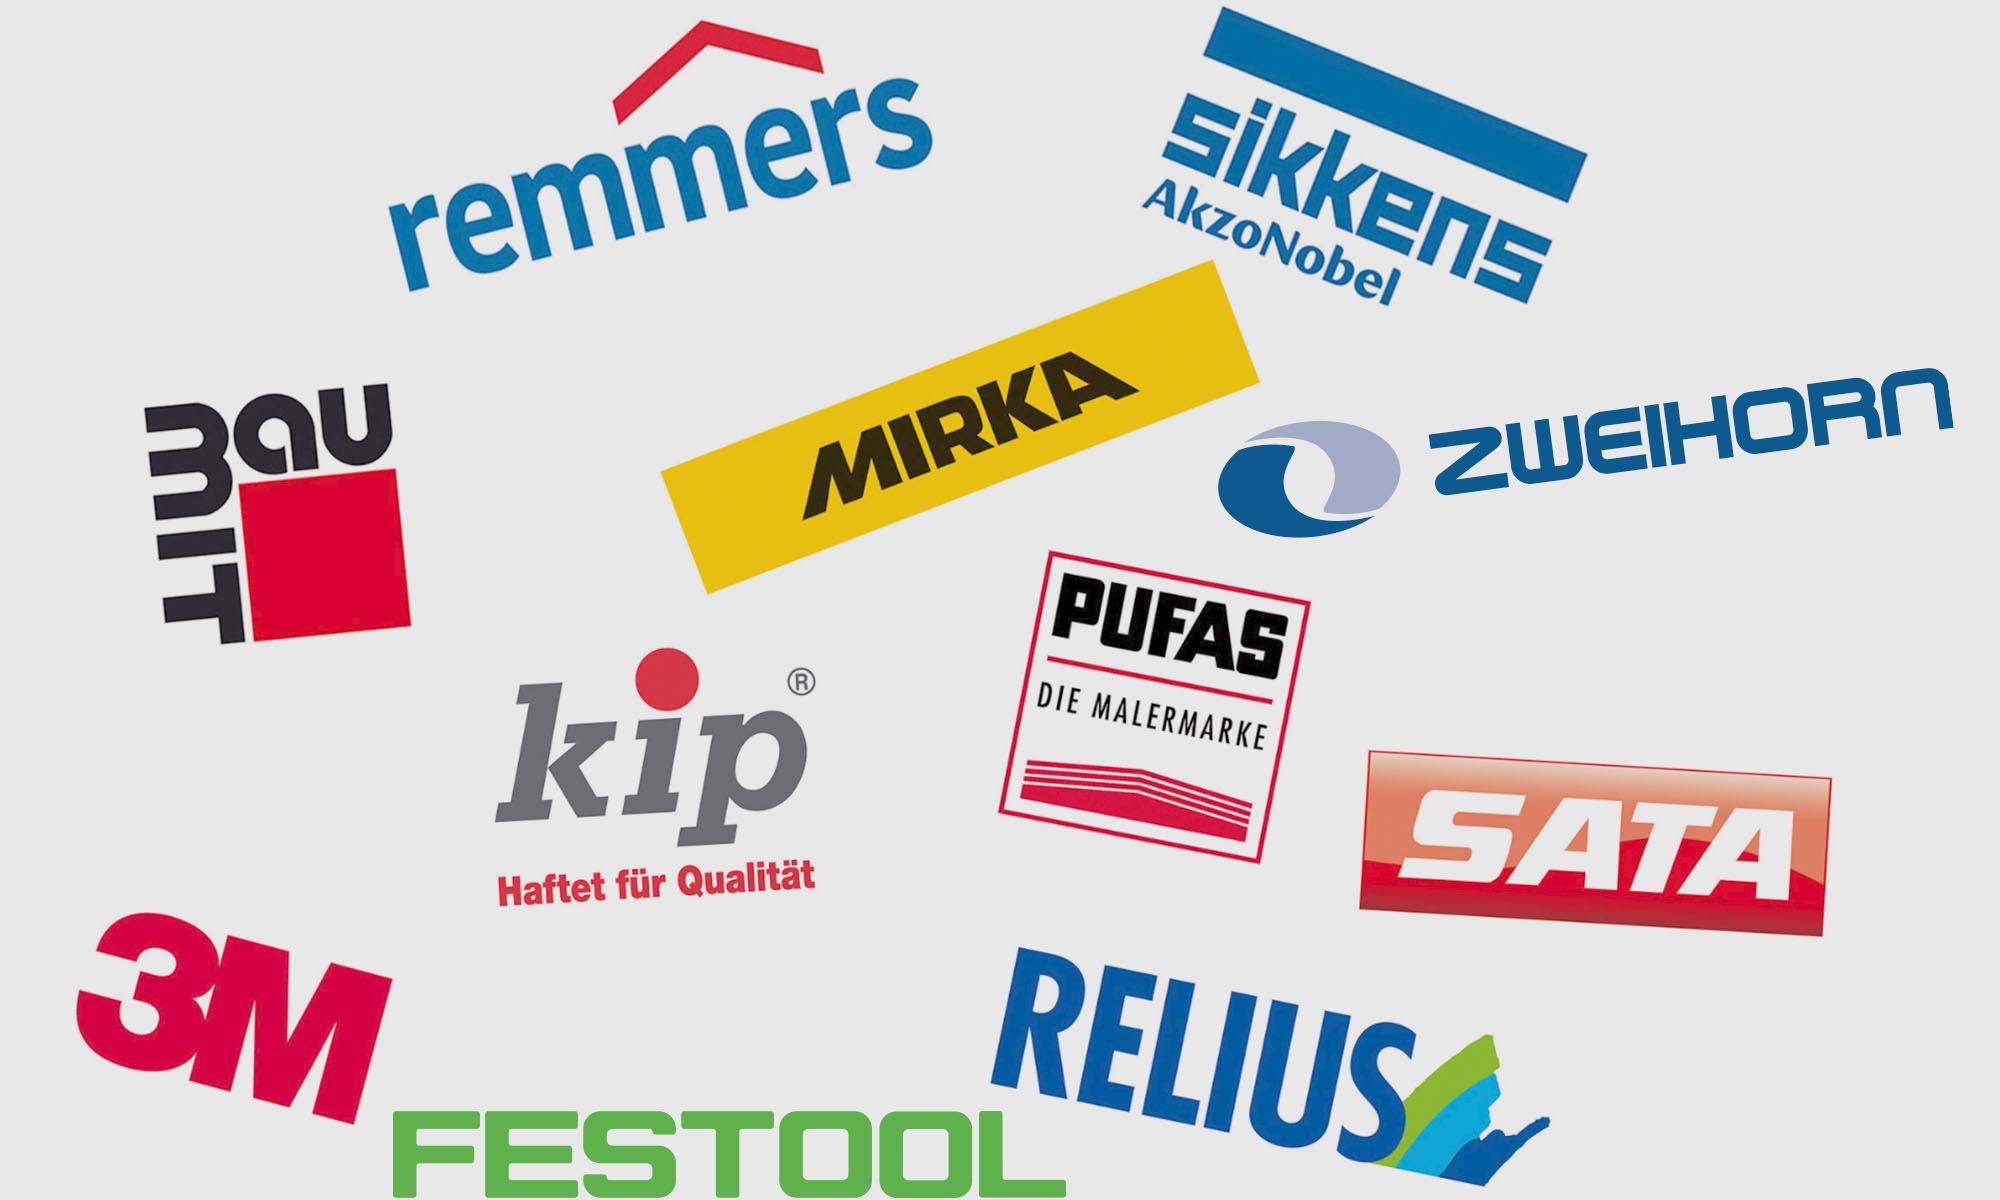 Unser Produktsortmient umfasst über 500 verschiedene Marken und Hersteller!